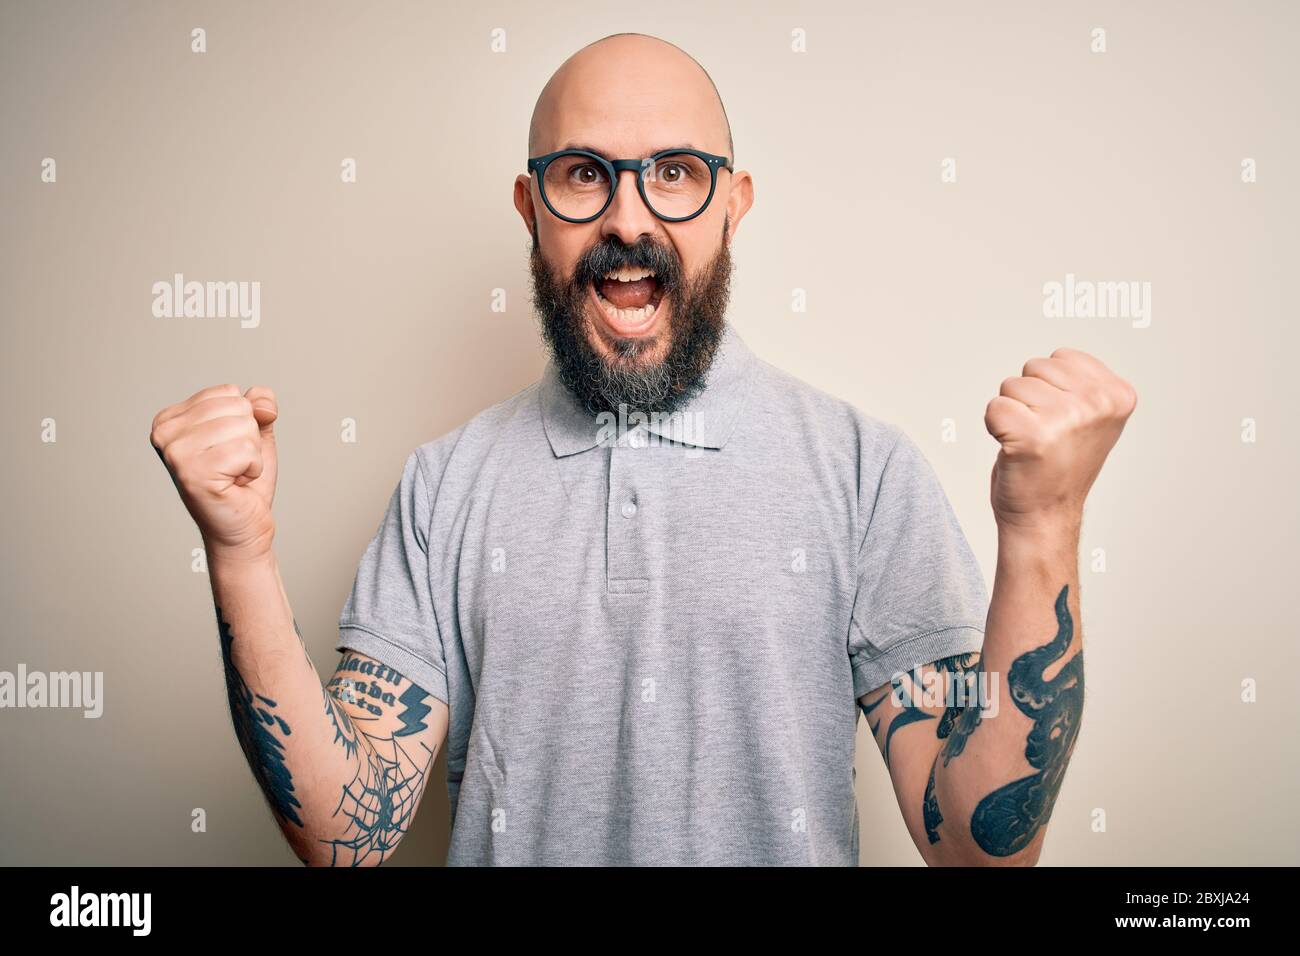 Schöner Glatze mit Bart und Tattoo in lässigem Polo und Brille, die  überrascht und erstaunt über den Erfolg mit erhobenen Armen und offenen  Augen feiert. W Stockfotografie - Alamy